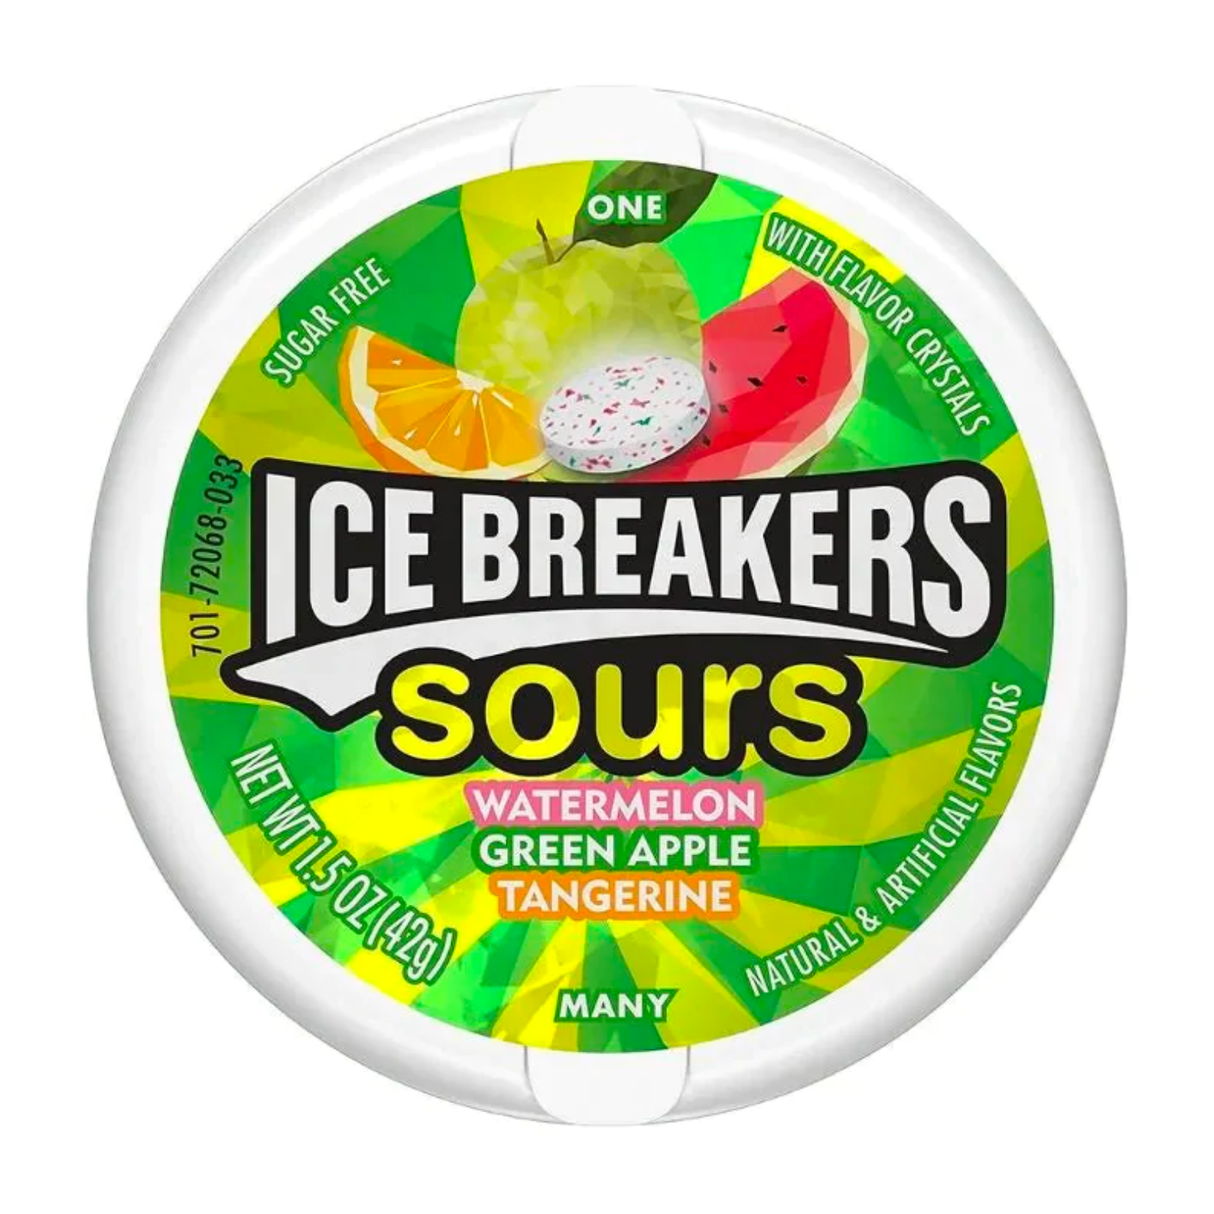 Ice Breakers Sours Watermelon Green Apple Tangerine 8 x 42g